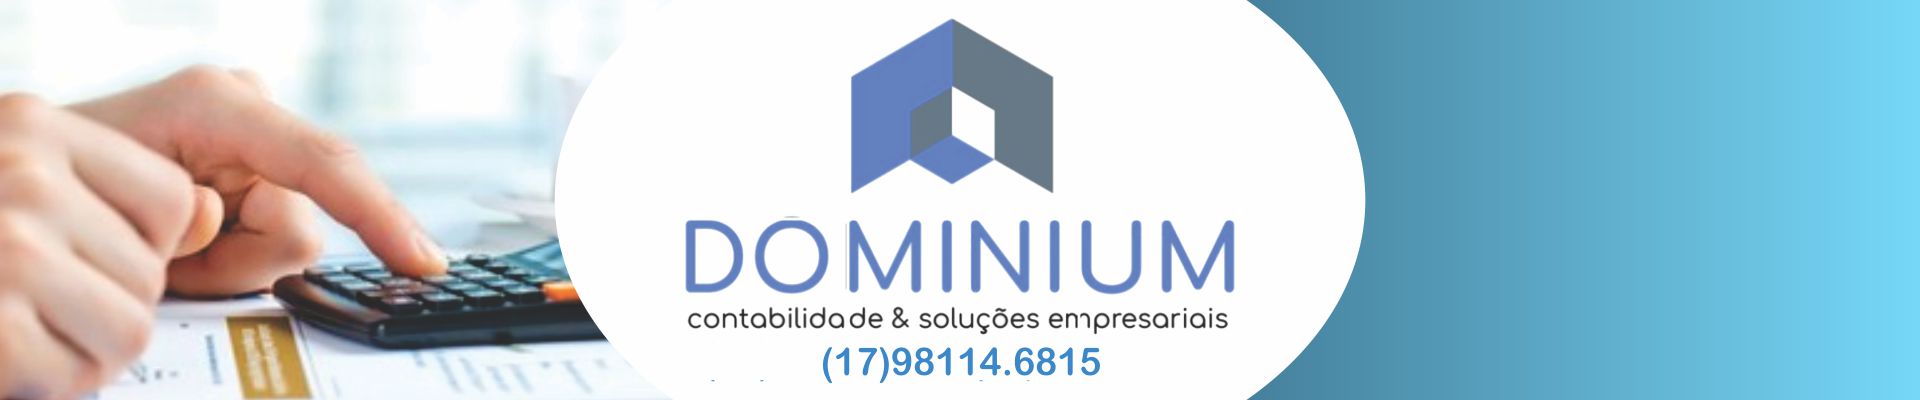 Dominium - Contabildiade & Soluções Empresariais